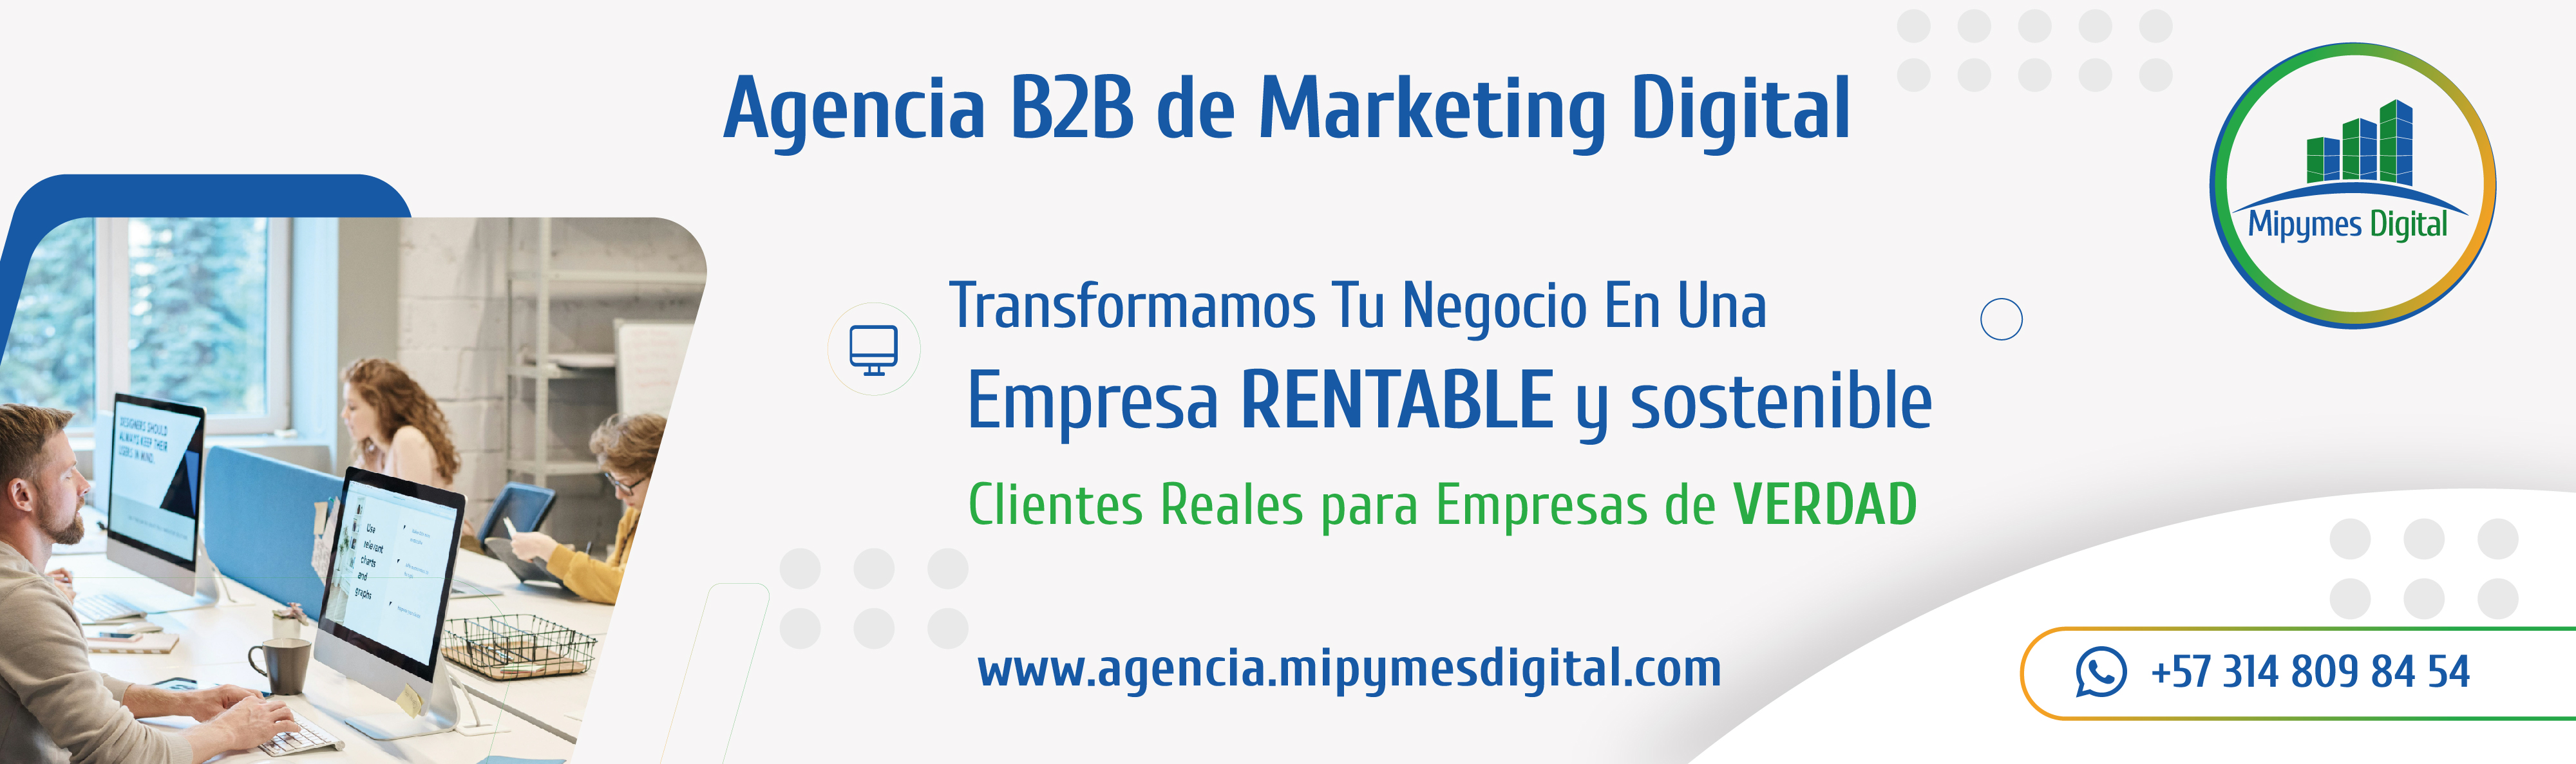 banner agencia b2b de marketing digital transformamos tu negocio en una empresa rentable y sostenible